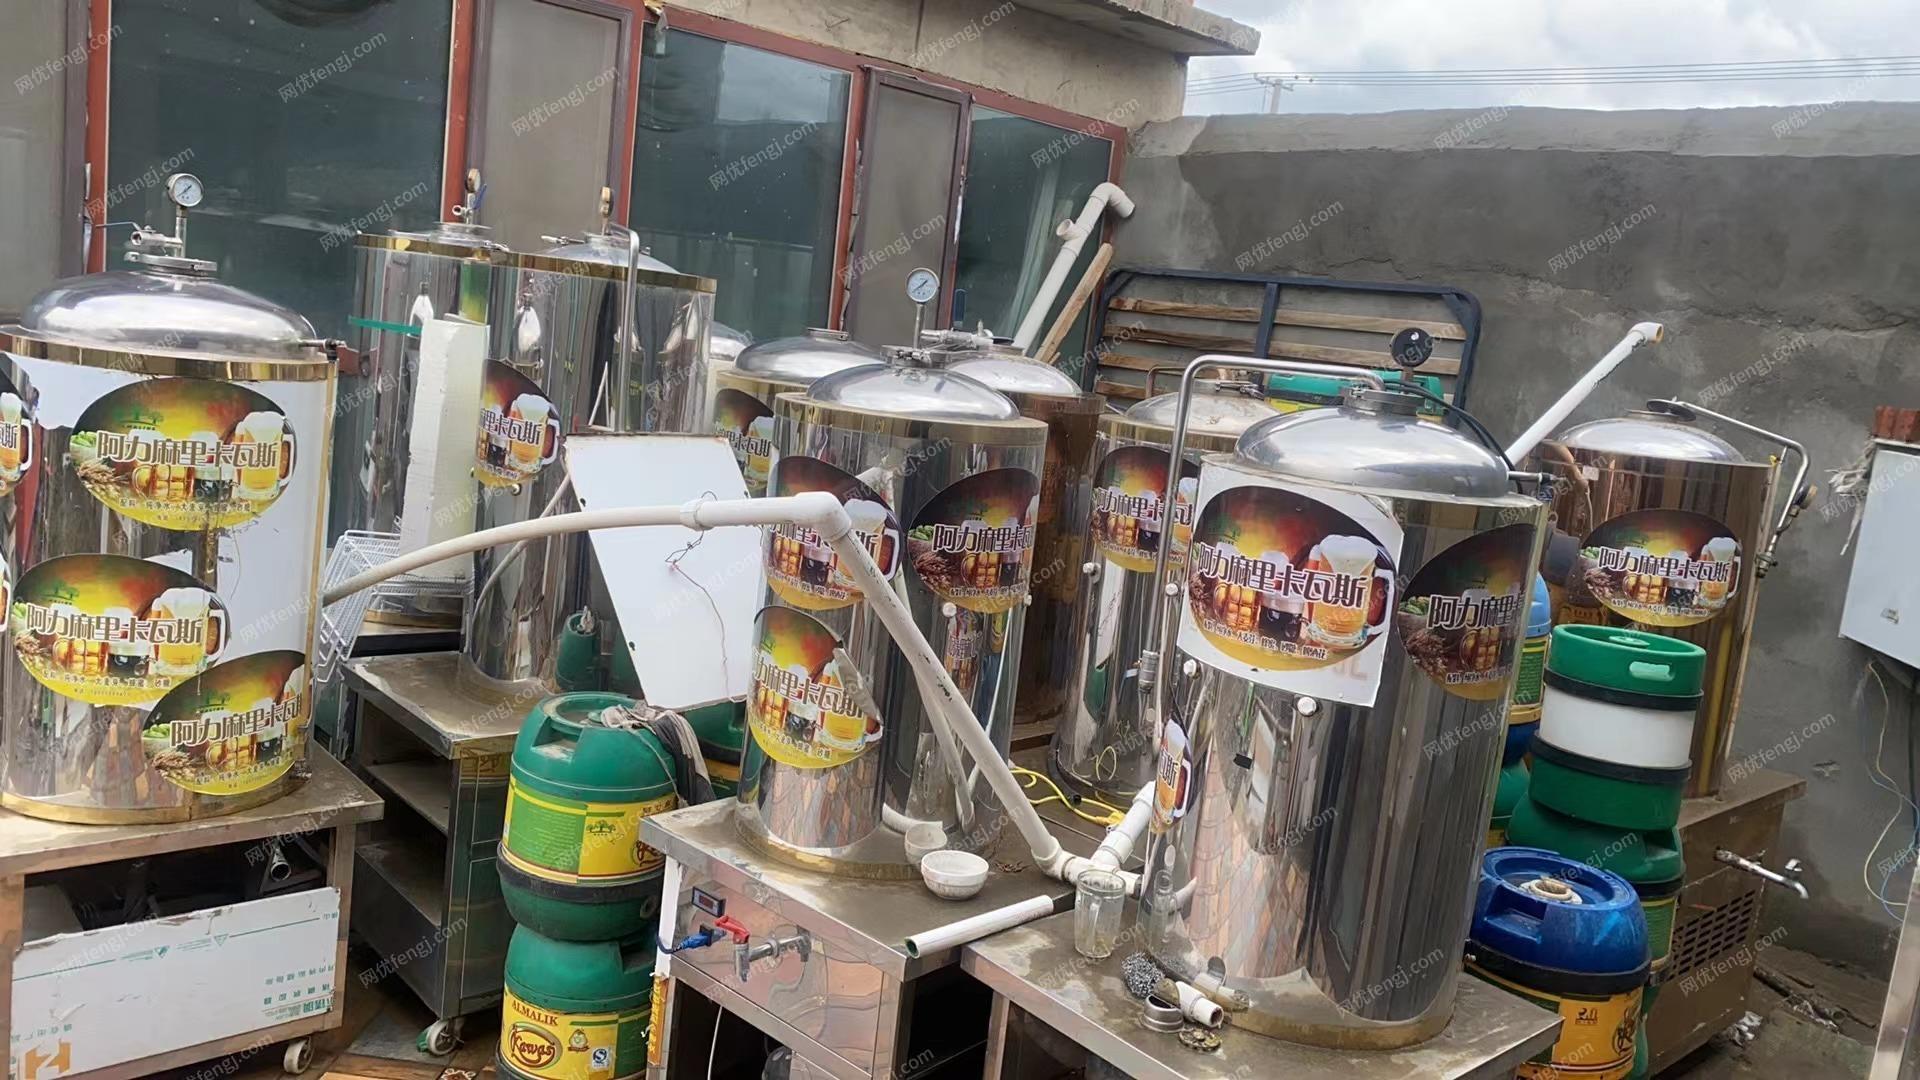 饮料加工厂处理1吨搅拌机,2吨冷热缸,700公斤不锈钢罐5-6个,有图片